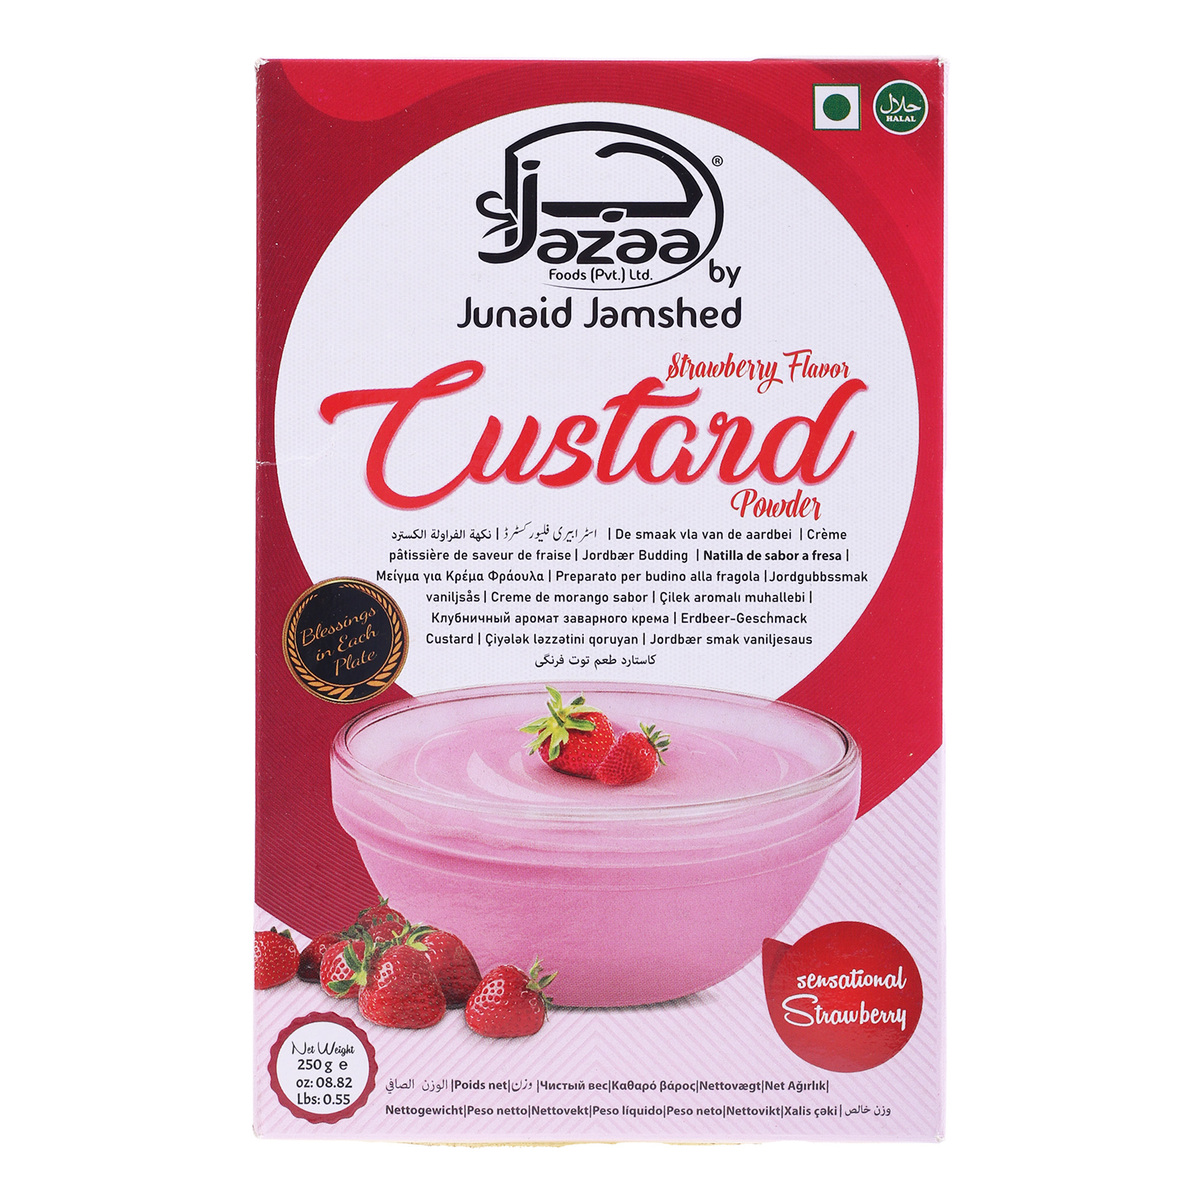 Jazaa Strawberry Flavor Custard Powder 250 g